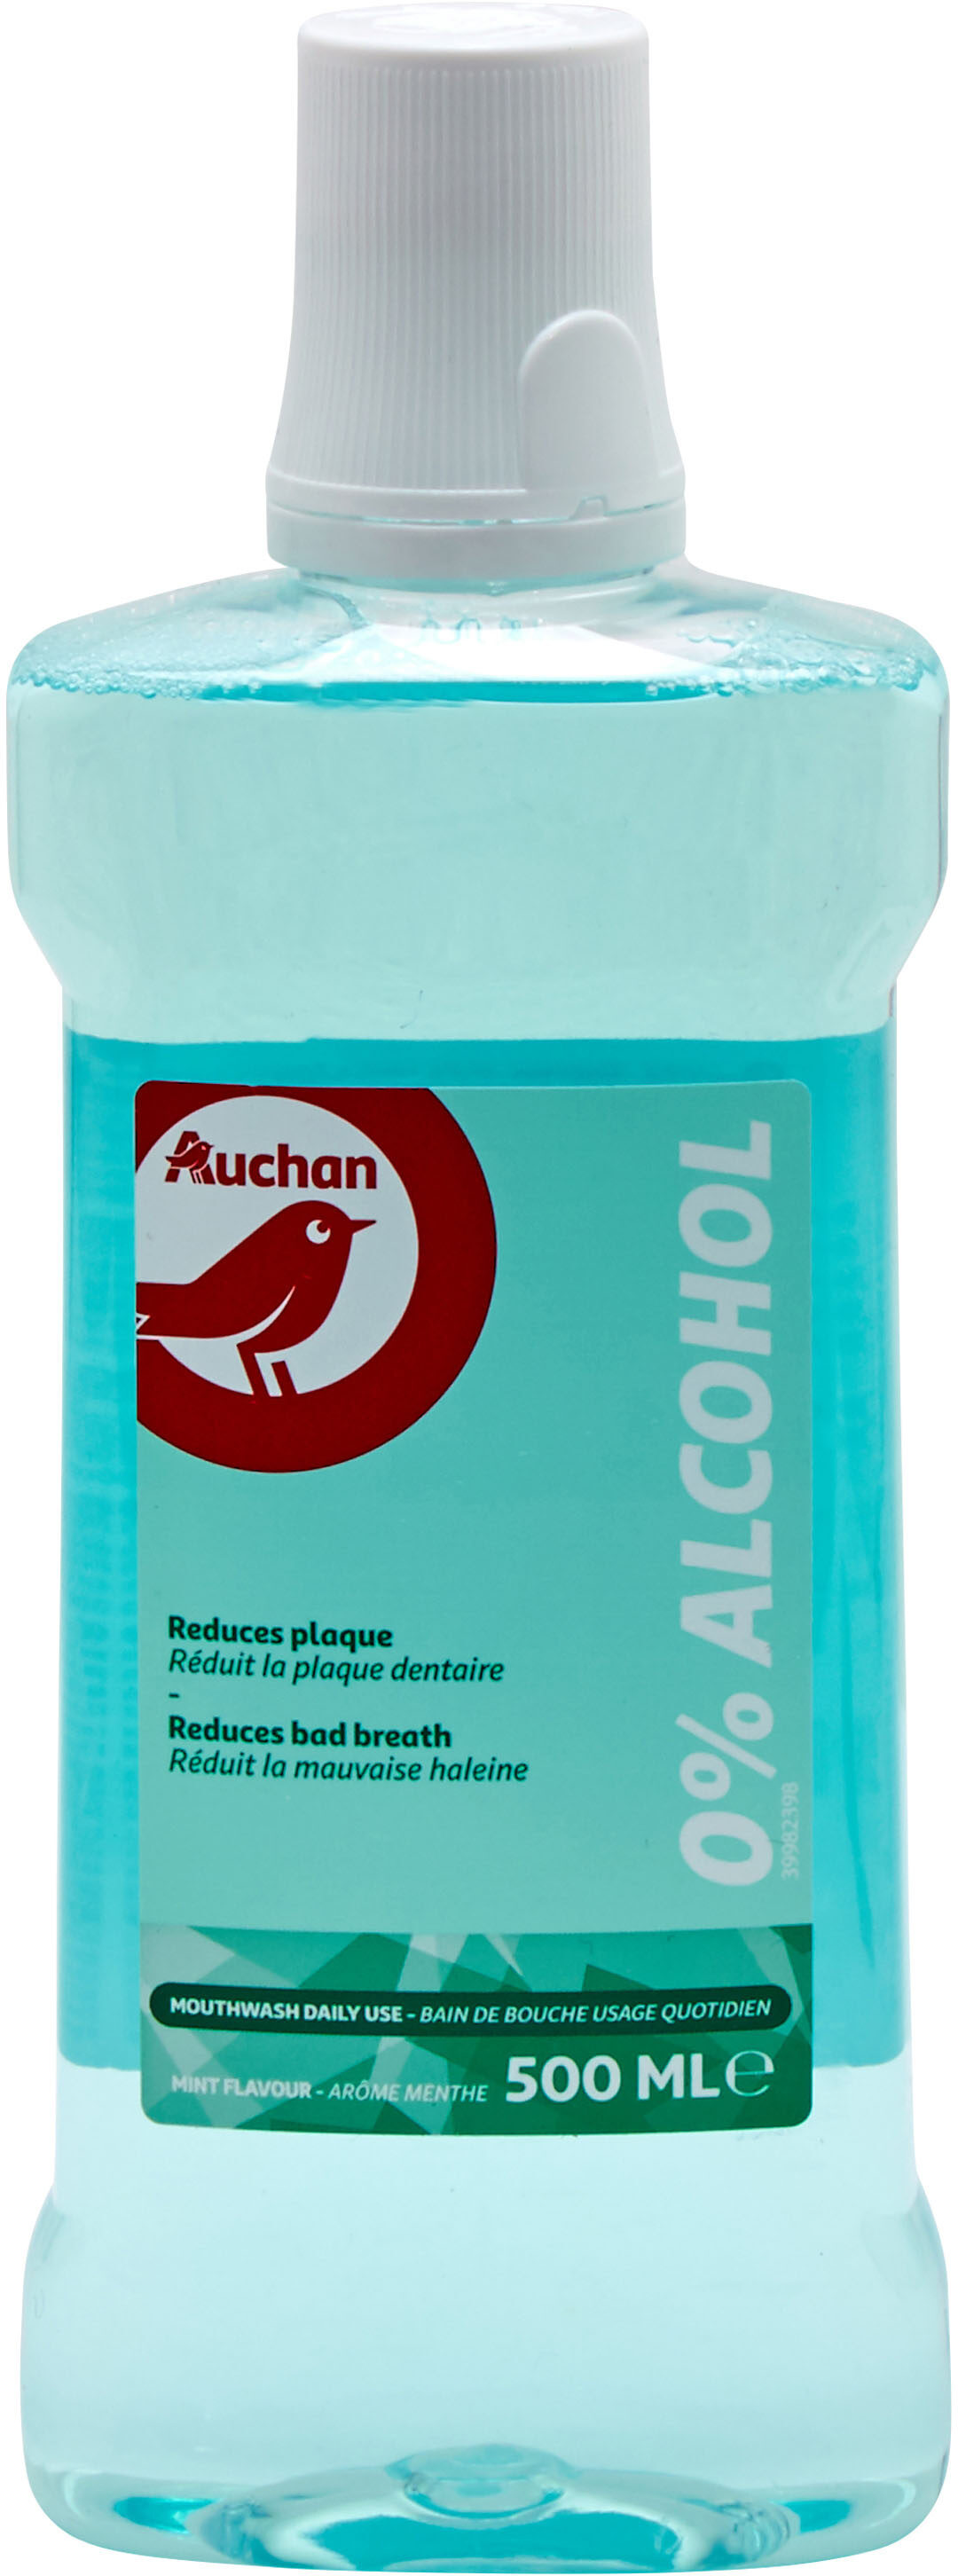 Auchan - bain de bouche - fraicheur 0% alcool - 500ml - Tuote - fr